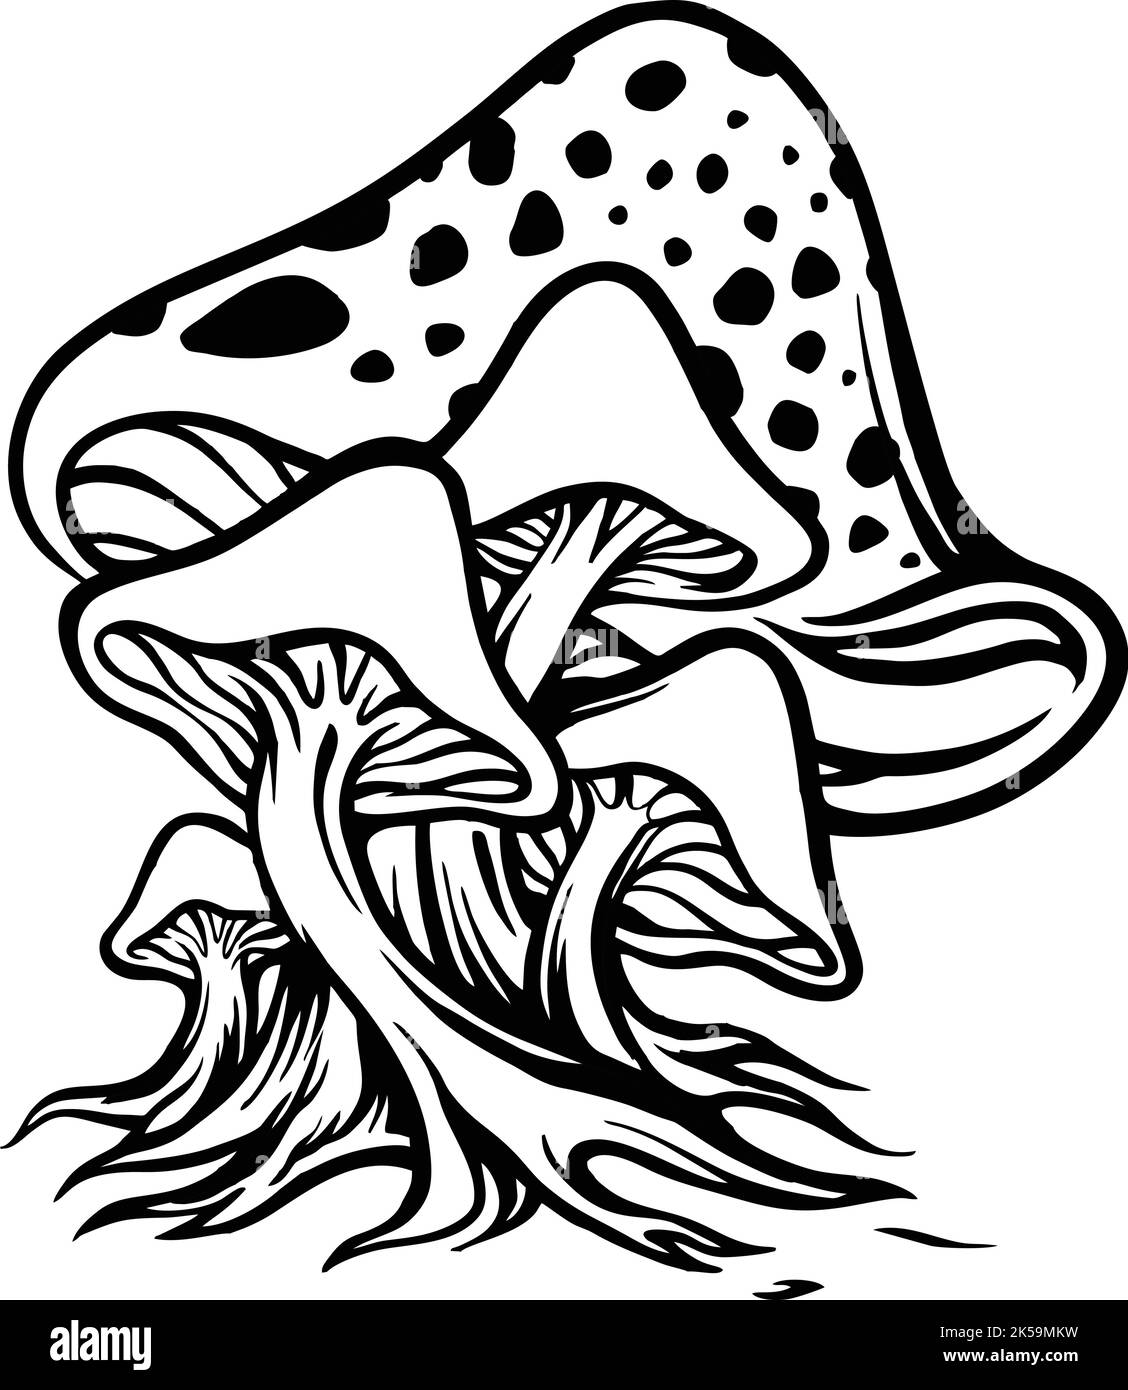 Pilz Pilze Silhouette Vektor-Illustrationen für Ihre Arbeit Logo, Maskottchen Merchandise T-Shirt, Aufkleber und Label-Designs, Poster, Grußkarten Stock Vektor